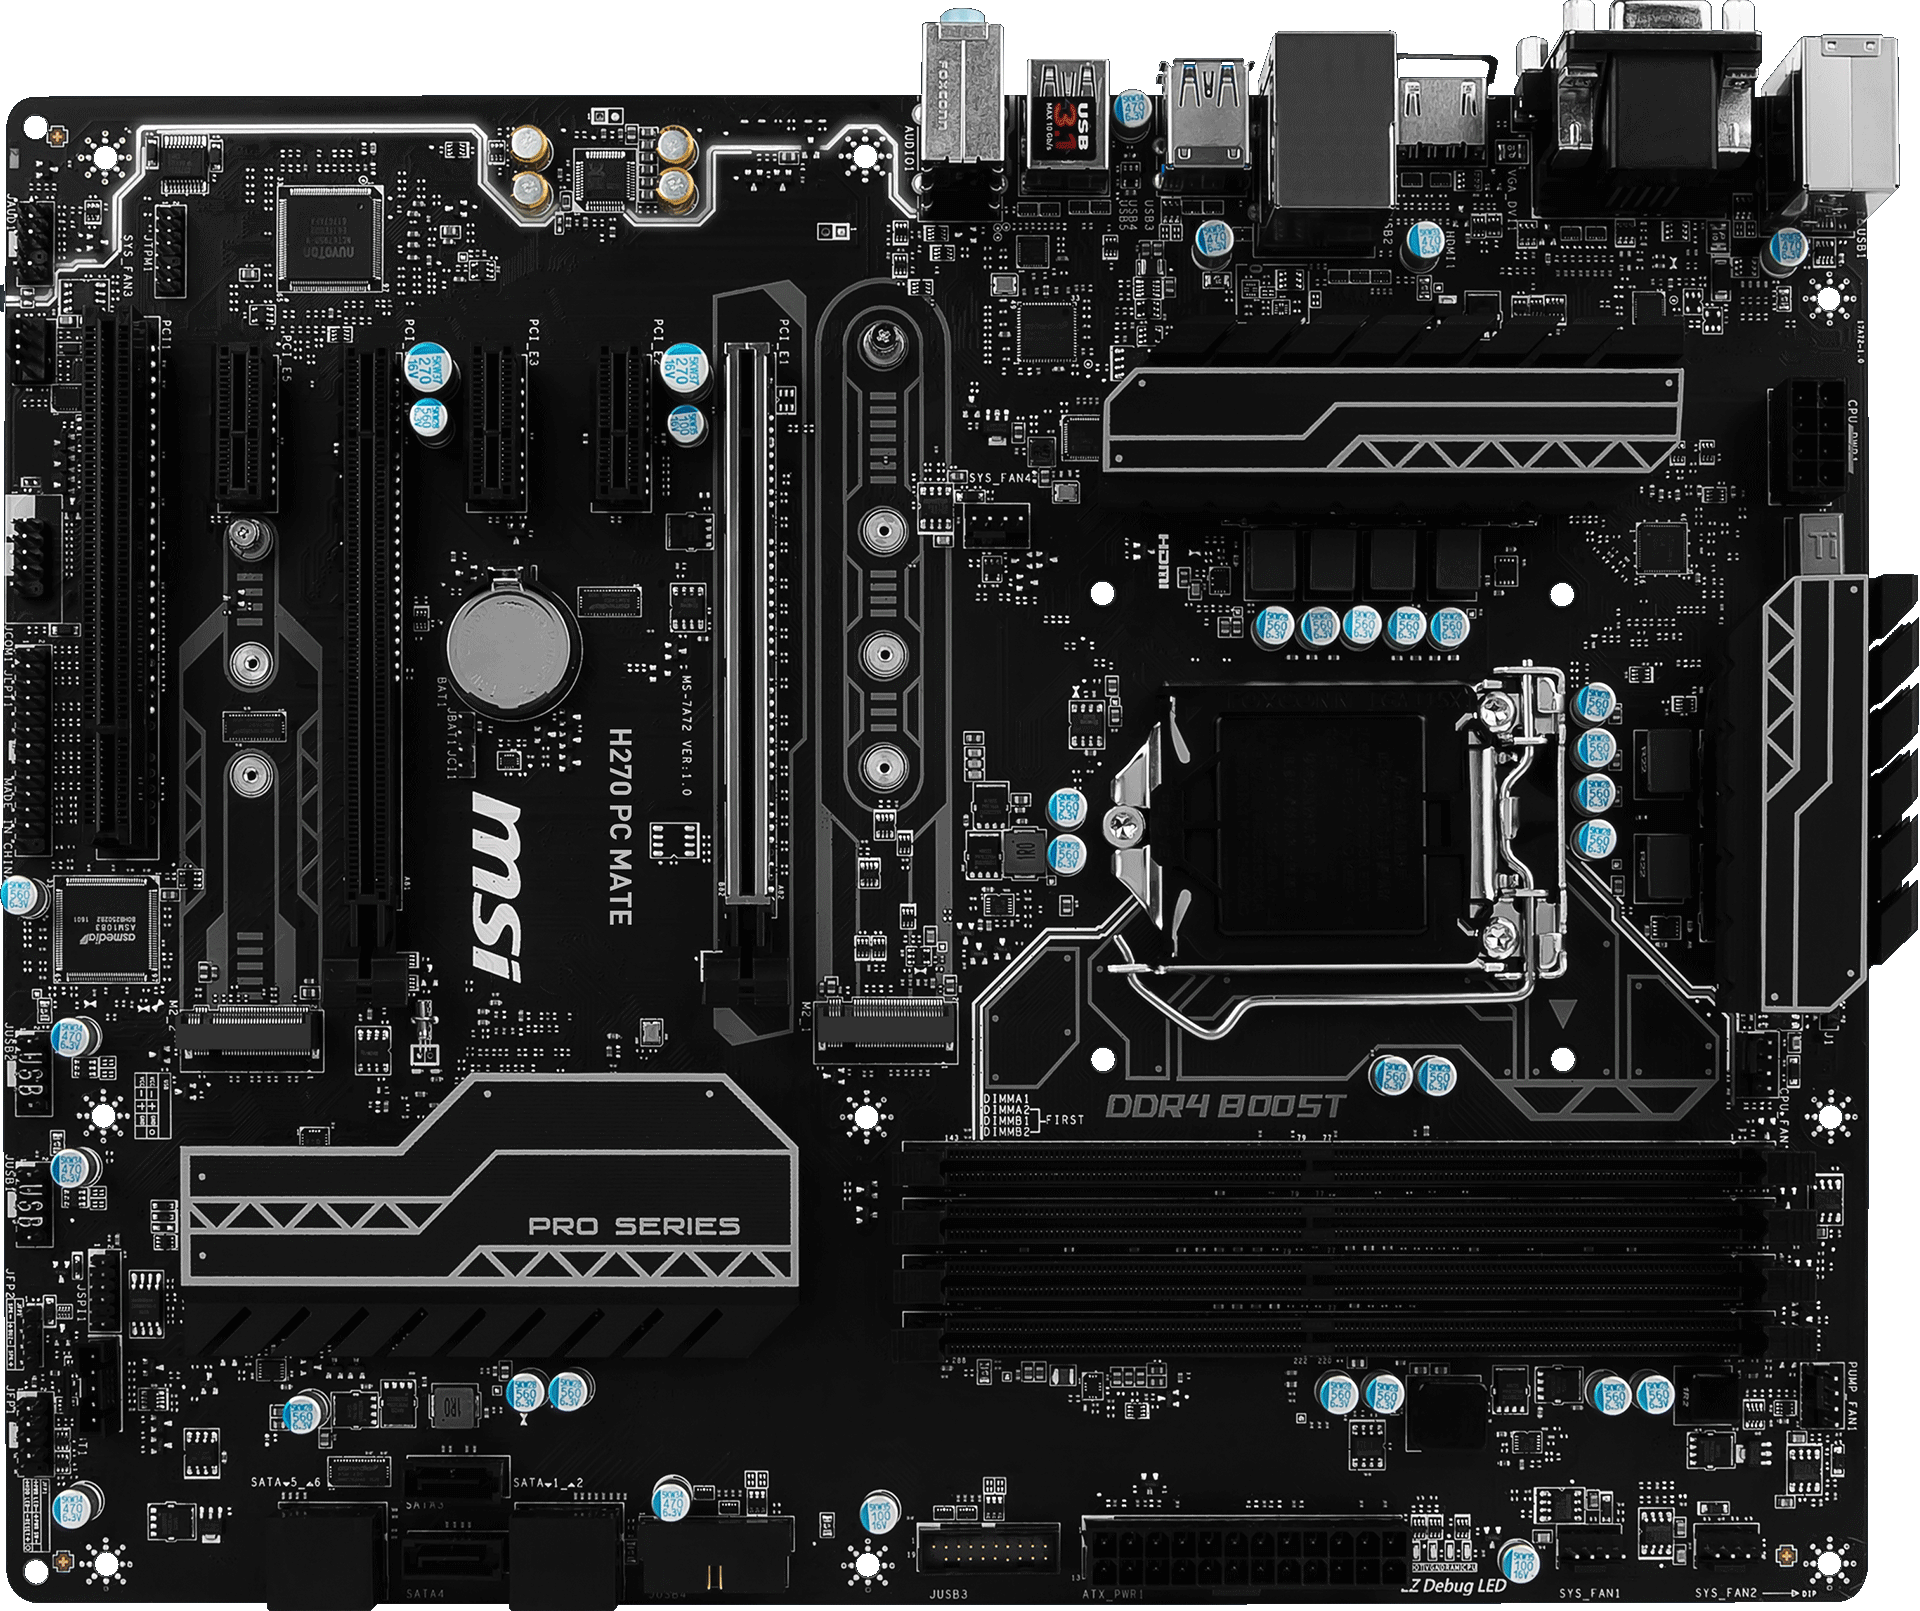 MSI H270 PC MATE 7th/6th Gen USB3 ATX Motherboard - Black (Intel Core i3/i5/i7 Processor, LGA 1151, Dual Channel DDR4, USB 3.1, PCI-E 3.0, PCI-E x1, Sata 6 GB)